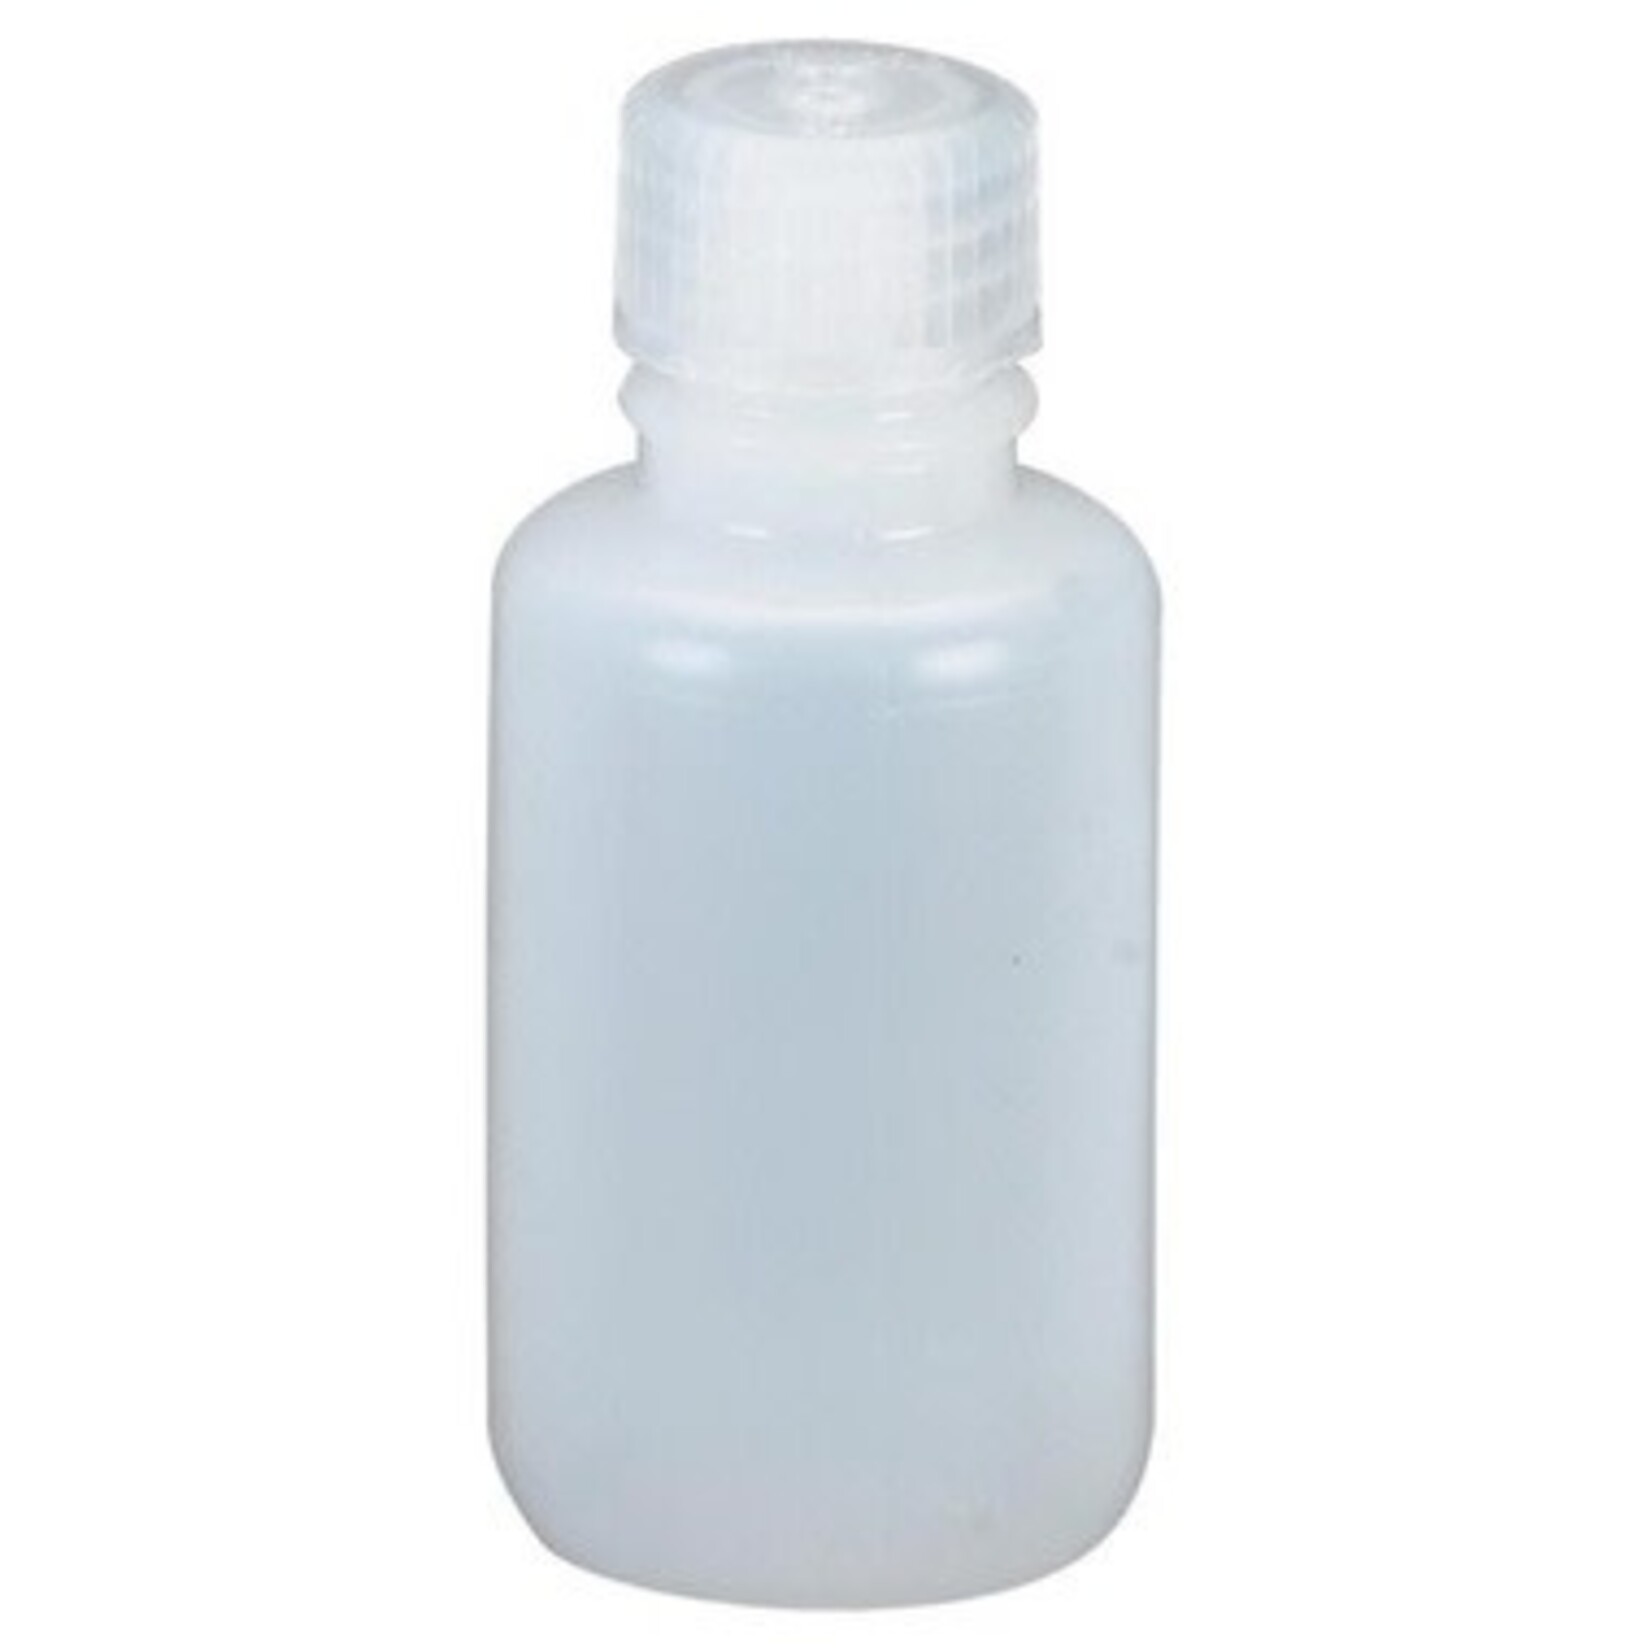 Nalgene Bouteille 1 oz (30 ml) Narrow Mouth Round Bottles (HDPE)